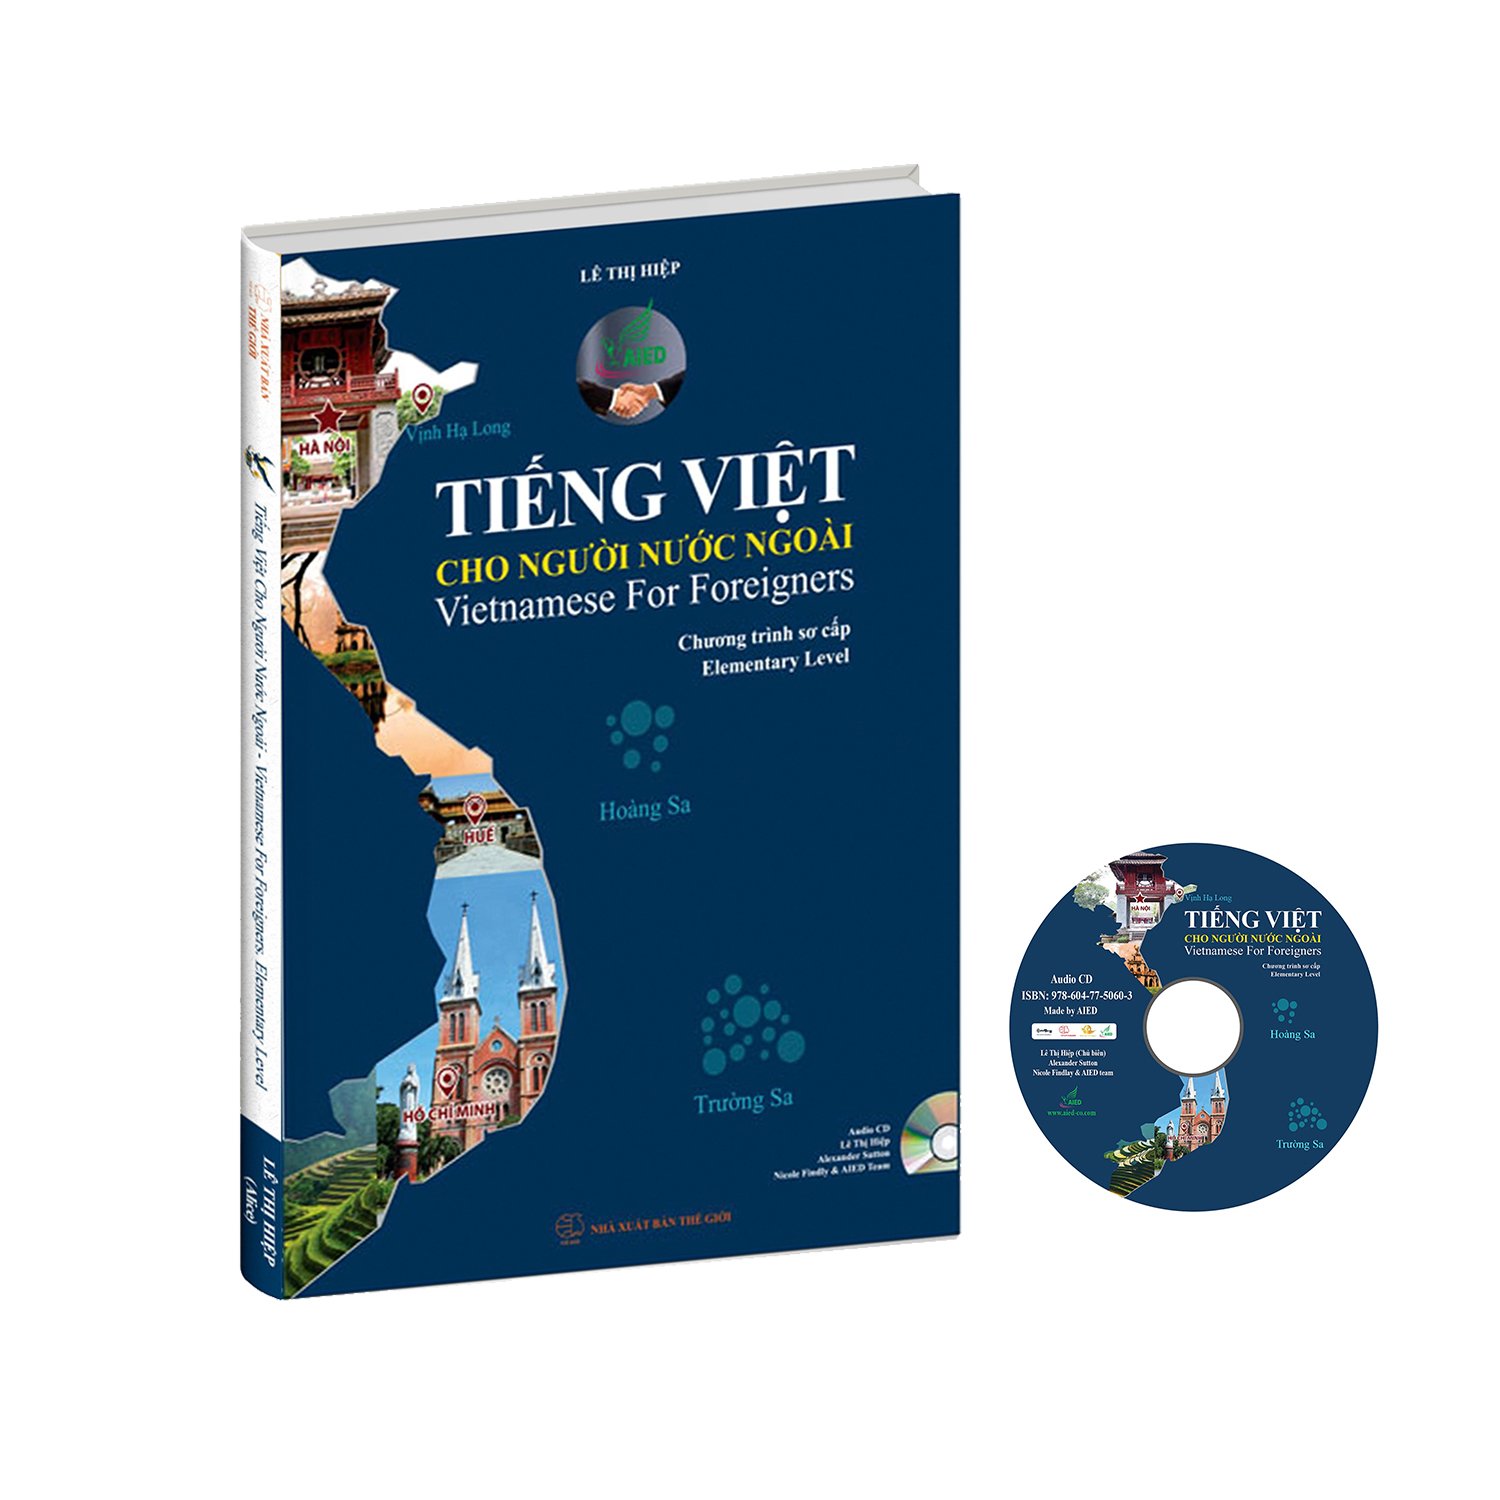 Hình ảnh Combo Bộ sách Tiếng Việt cho người nước ngoài chương trình Sơ cấp và Khám phá tiếng Việt hiện đại